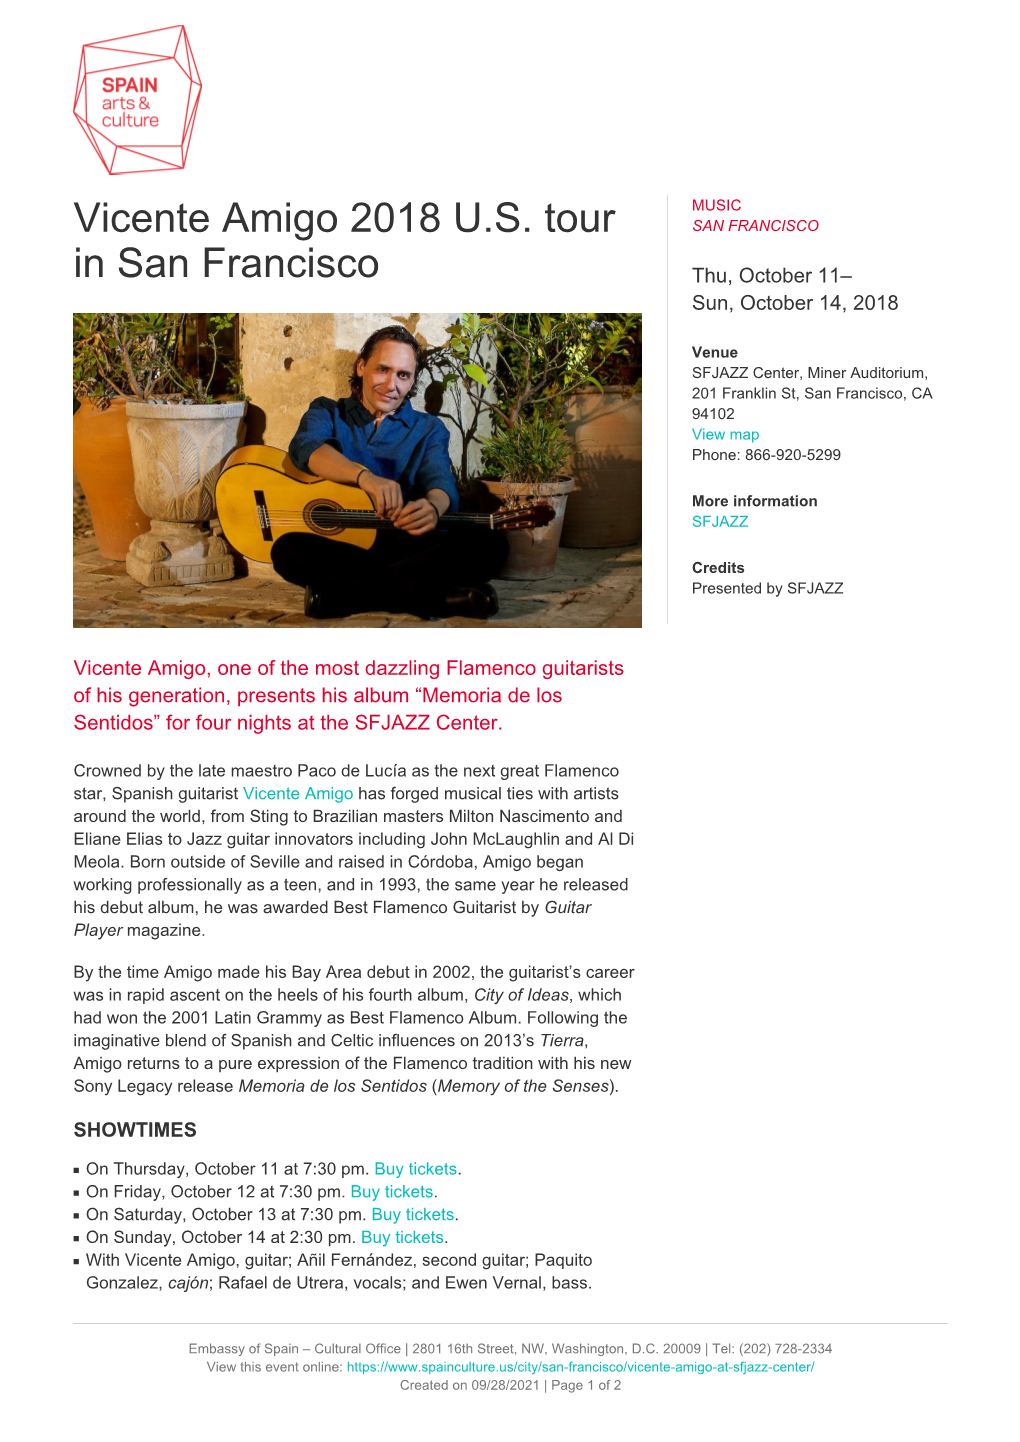 Vicente Amigo 2018 US Tour in San Francisco